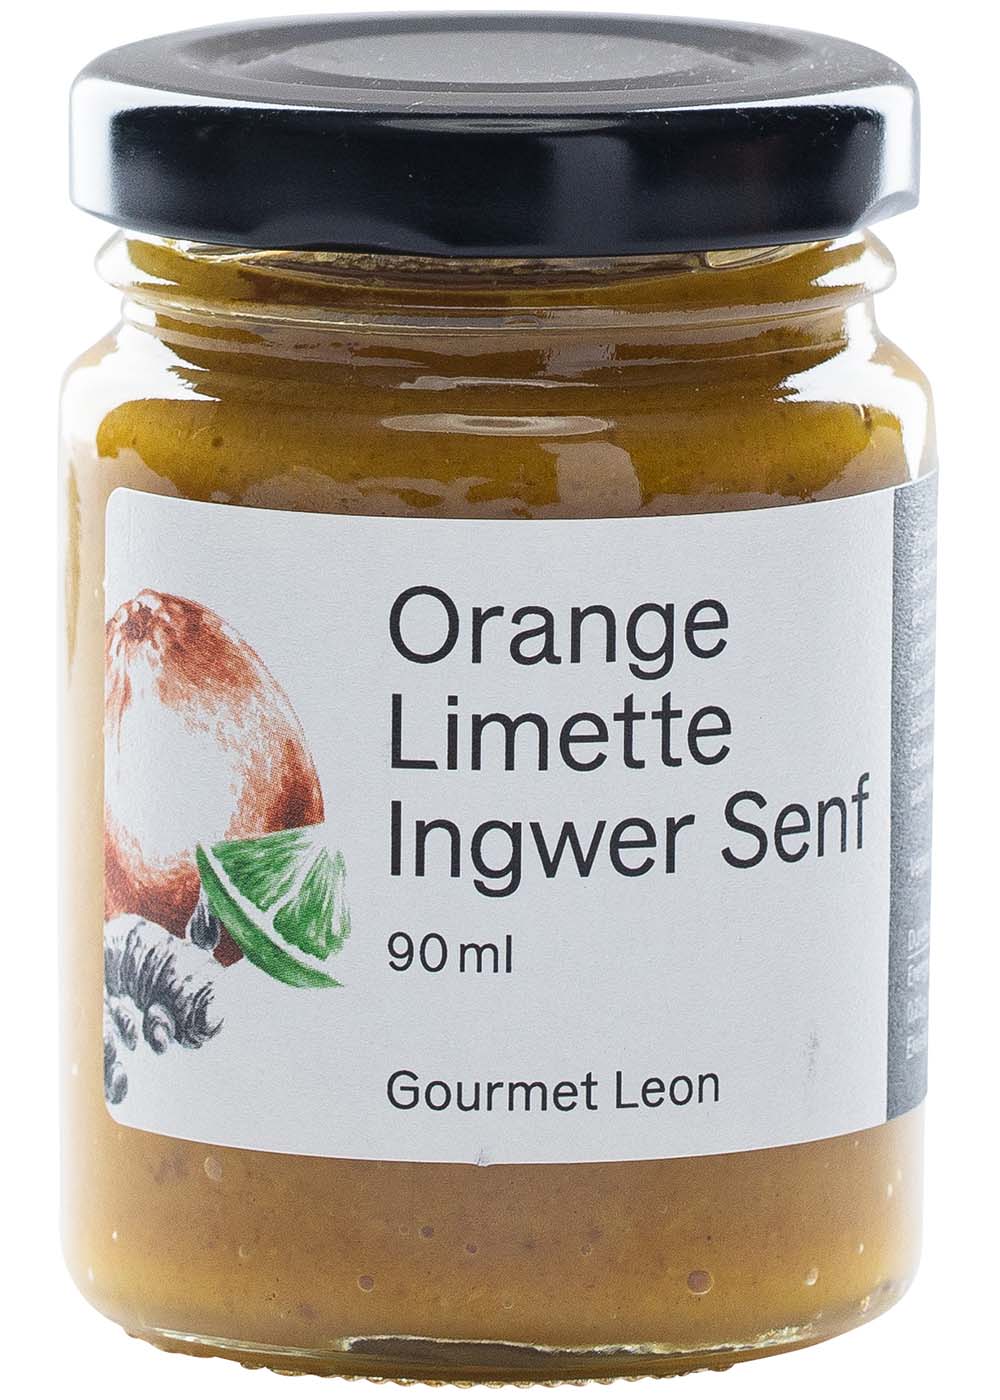 Orange-Limette-Ingwer Senf